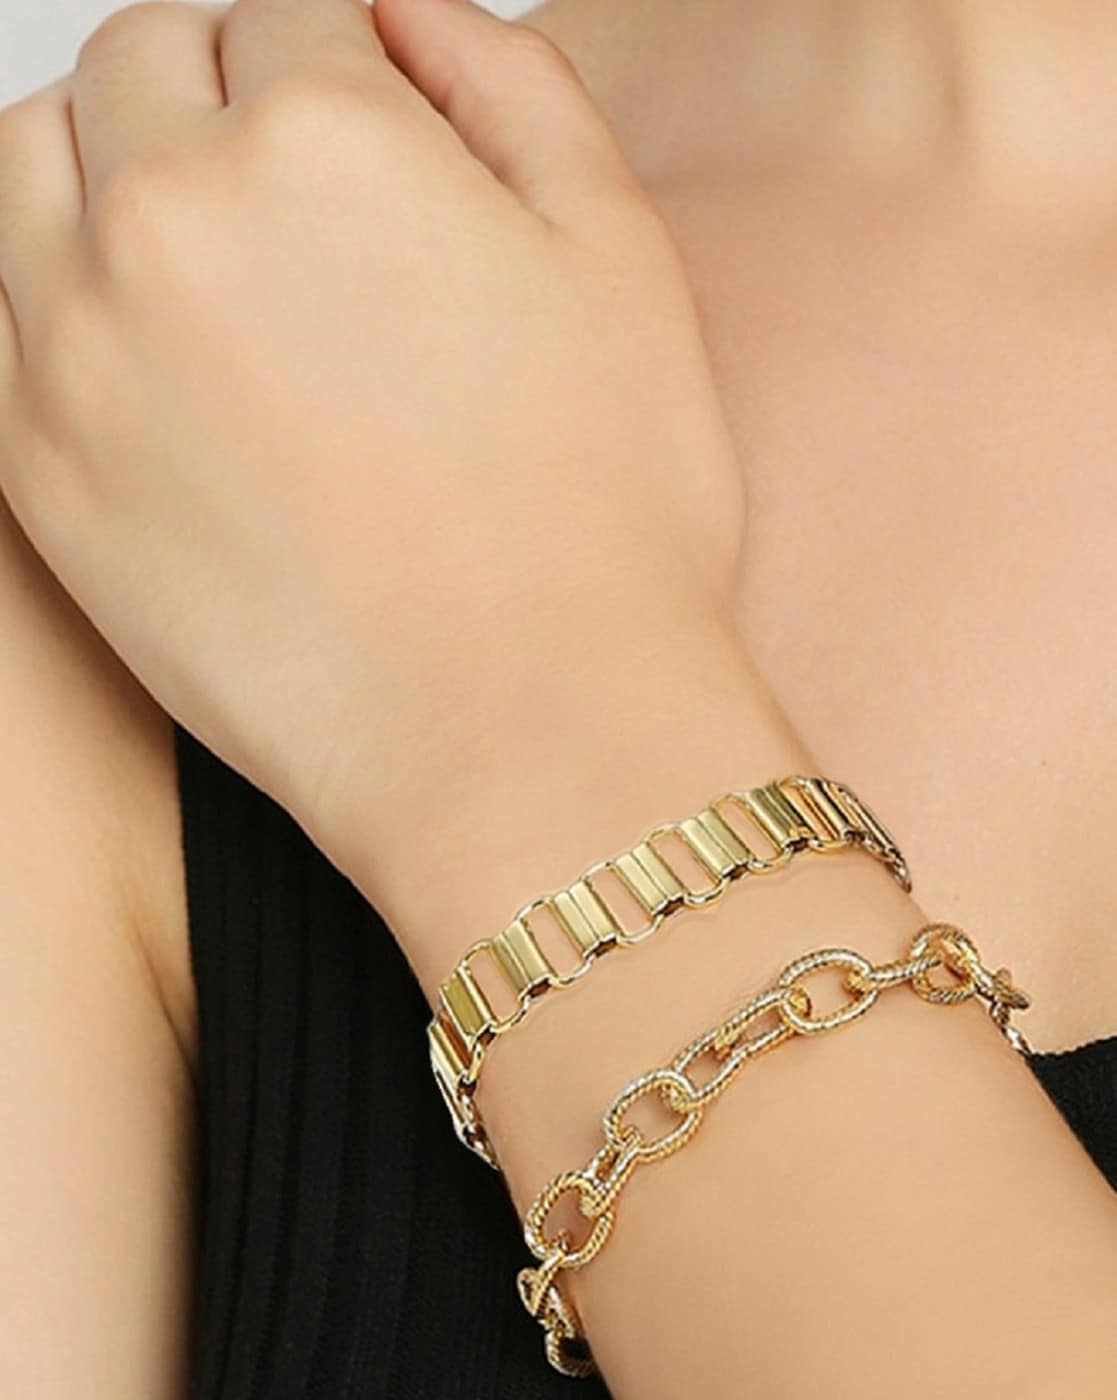 Italian Gold Wide Fancy Link Chain Bracelet in 14k Gold - Macy's